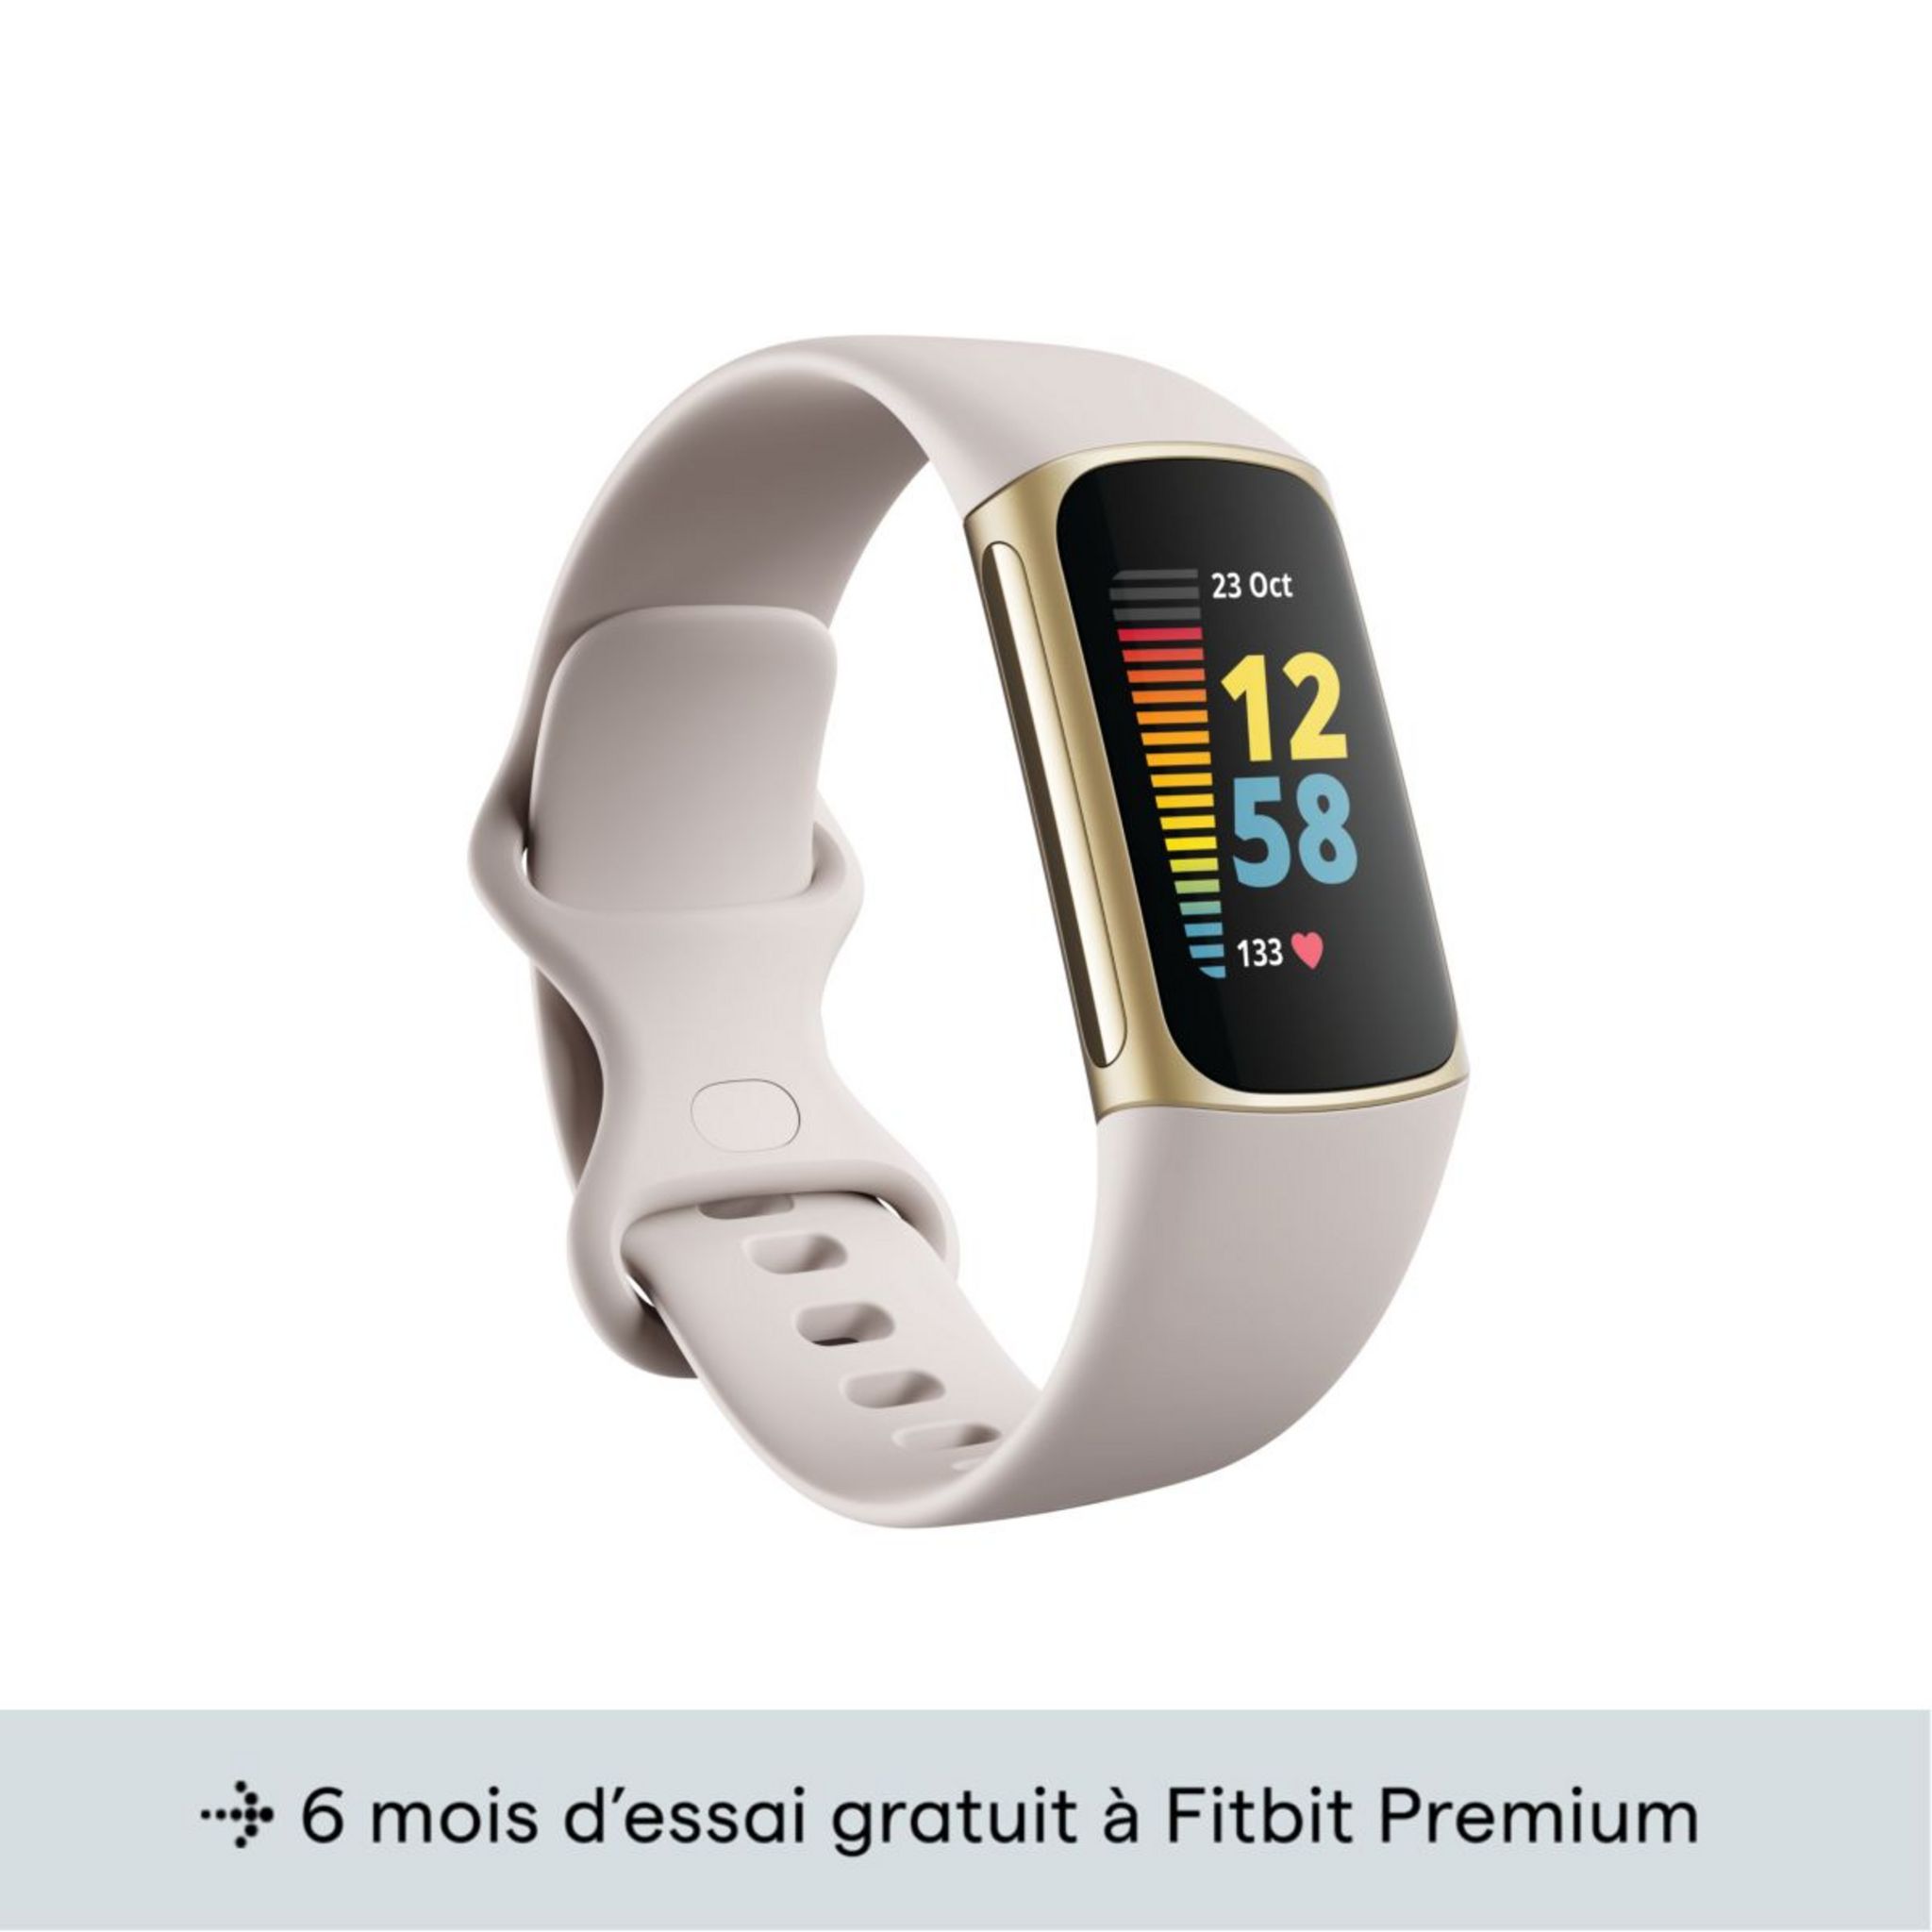 FitBit Charge 2 Lavande S - Bracelet connecté - Garantie 3 ans LDLC